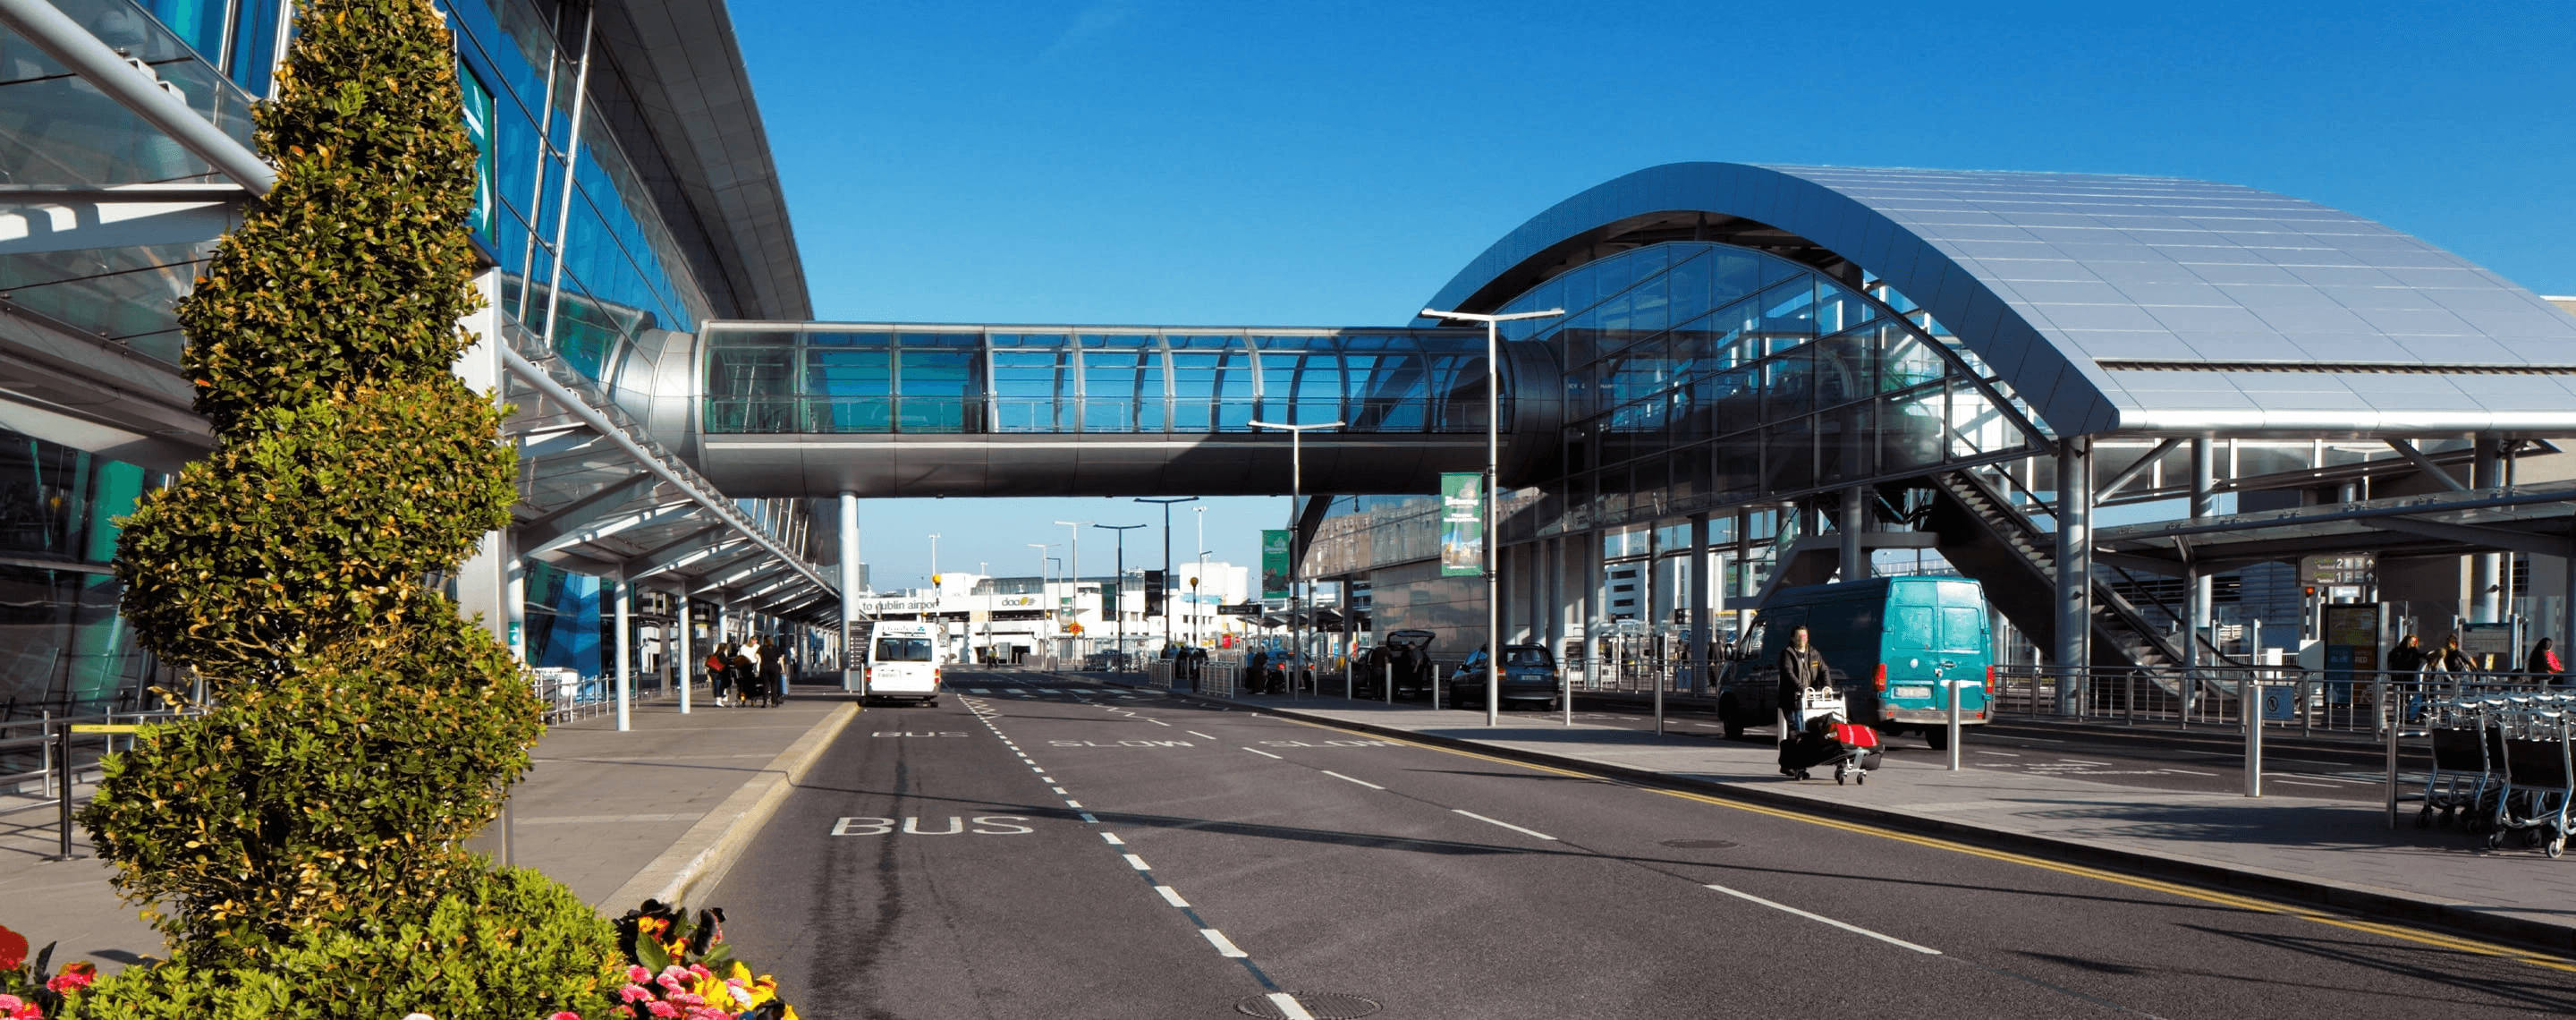 Terminal 2 am Flughafen Dublin, Irland